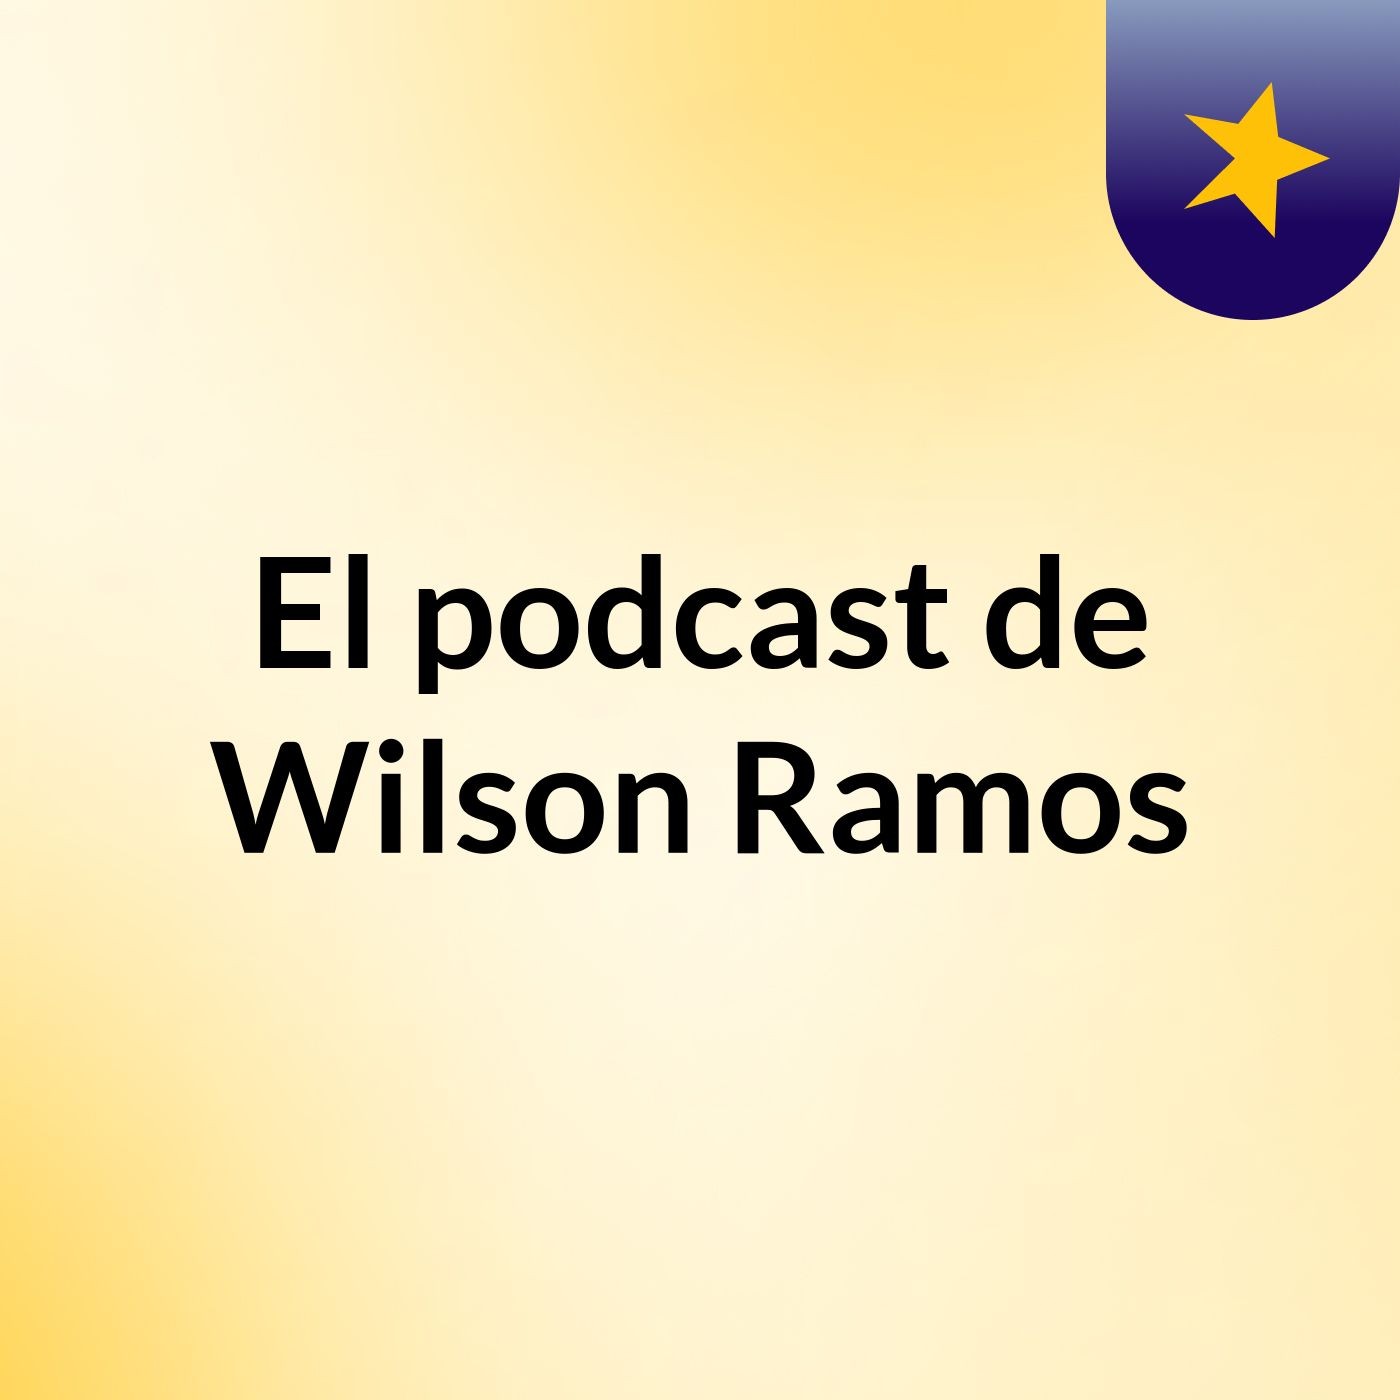 El podcast de Wilson Ramos